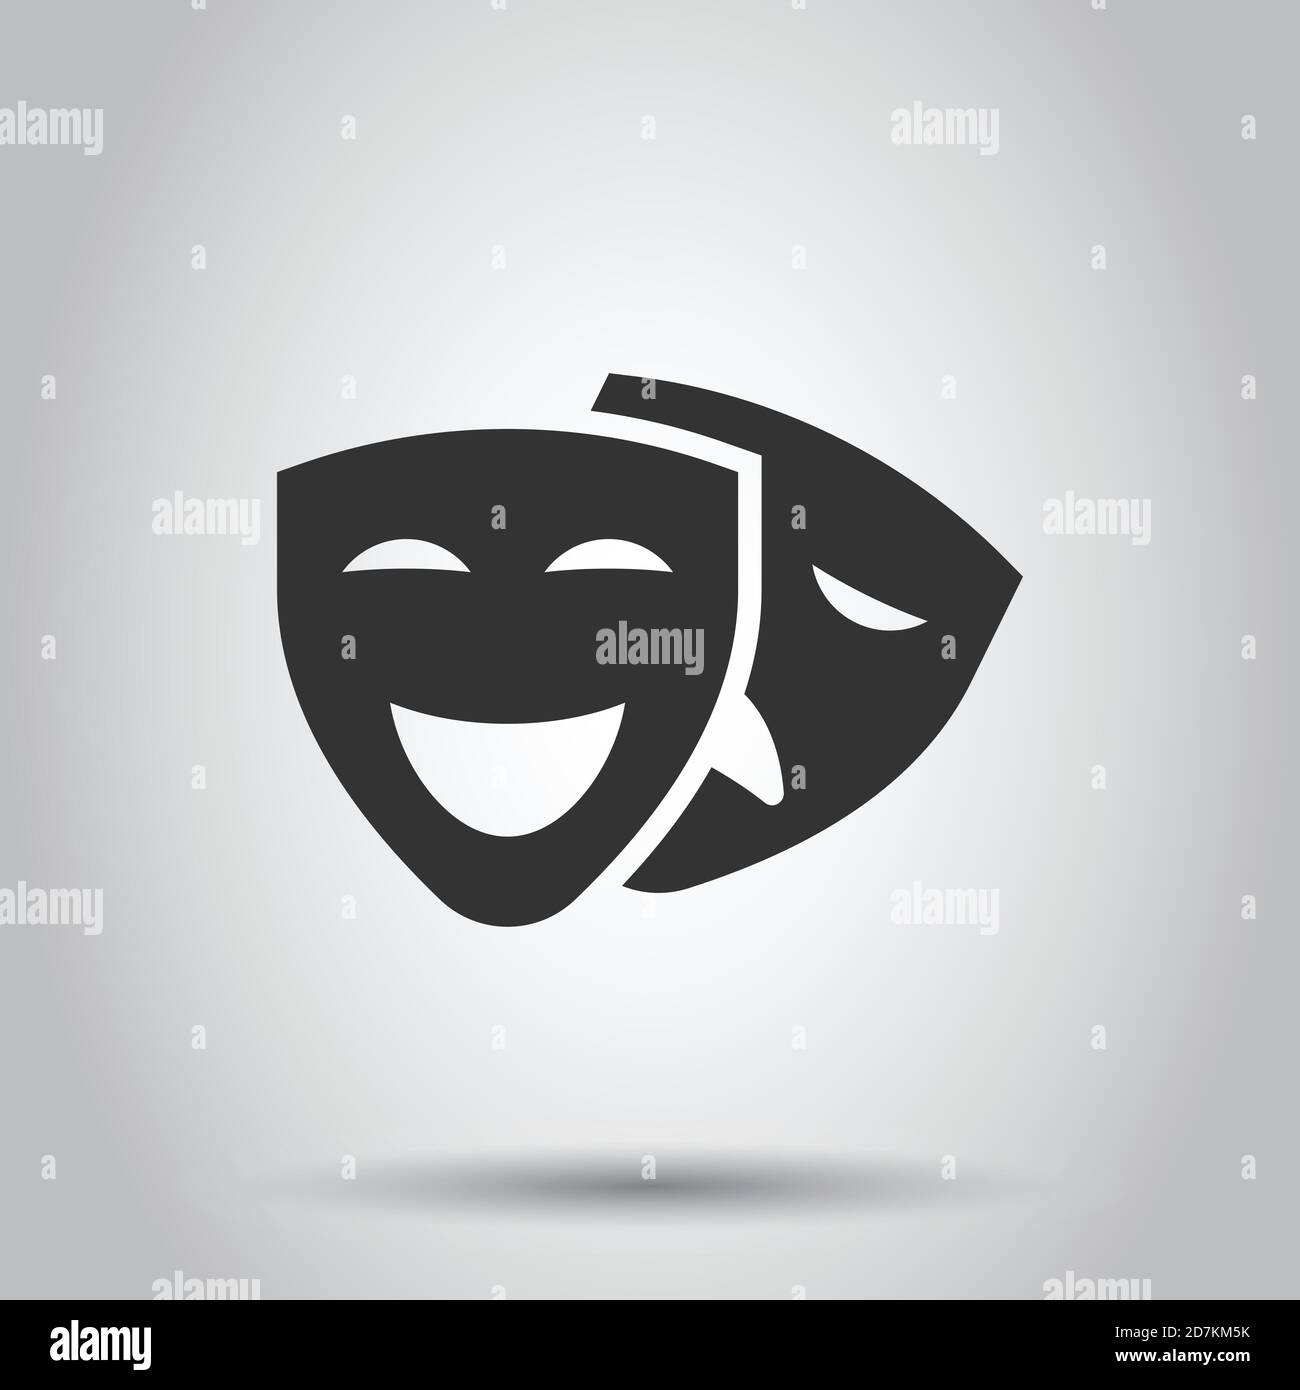 Theater-Maske-Symbol in flacher Form. Comedy und Tragik Vektorgrafiken auf weiß isoliertem Hintergrund. Lächeln Gesicht Geschäftskonzept. Stock Vektor